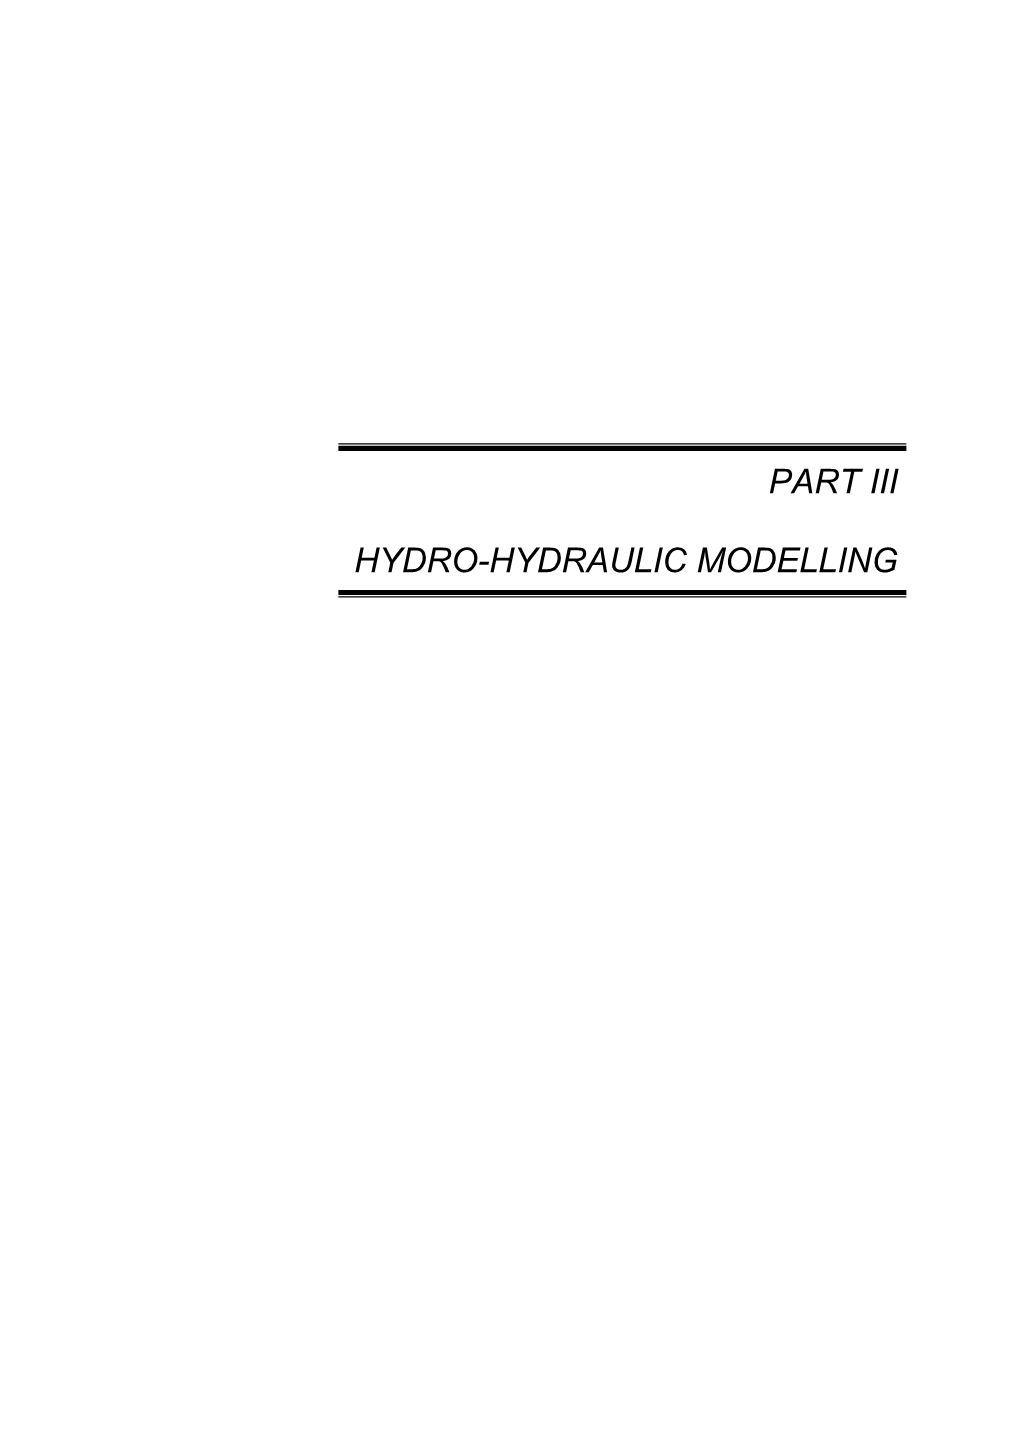 Part Iii Hydro-Hydraulic Modelling